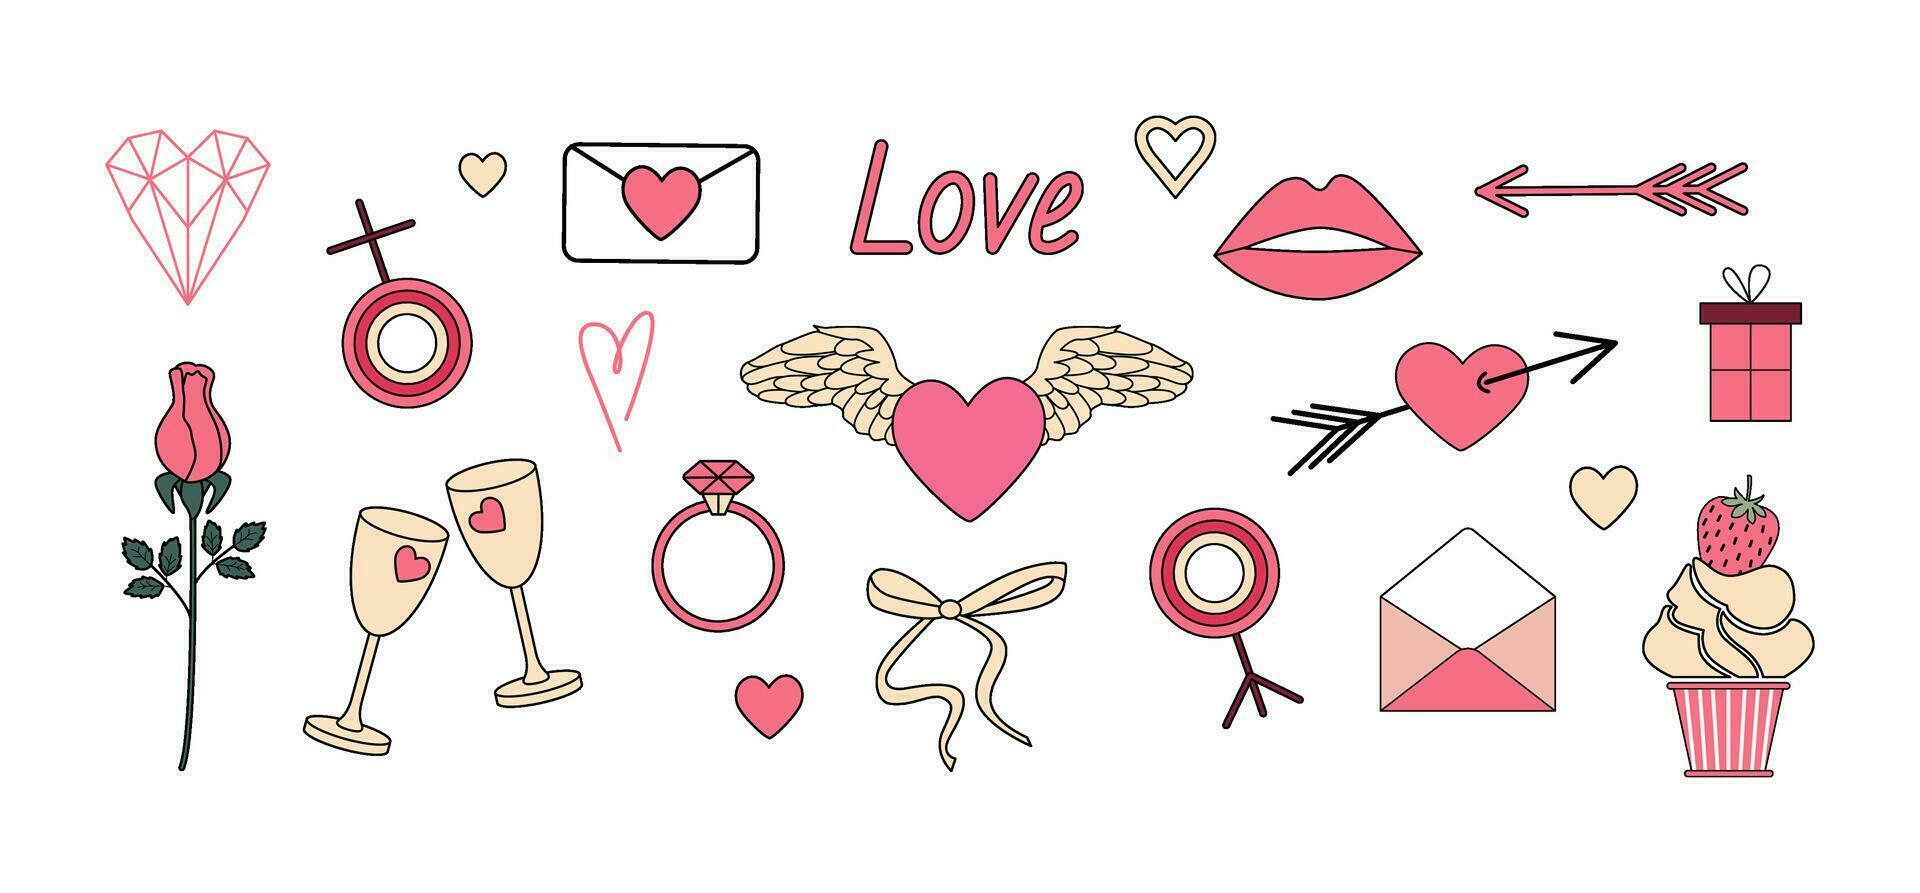 Valentijnsdag dag clip art. roze harten, liefde mail, ring, bloem, geschenk, glas van wijn, lippen, pijl. meisjesachtig retro romantisch stickers, krabbels. vector